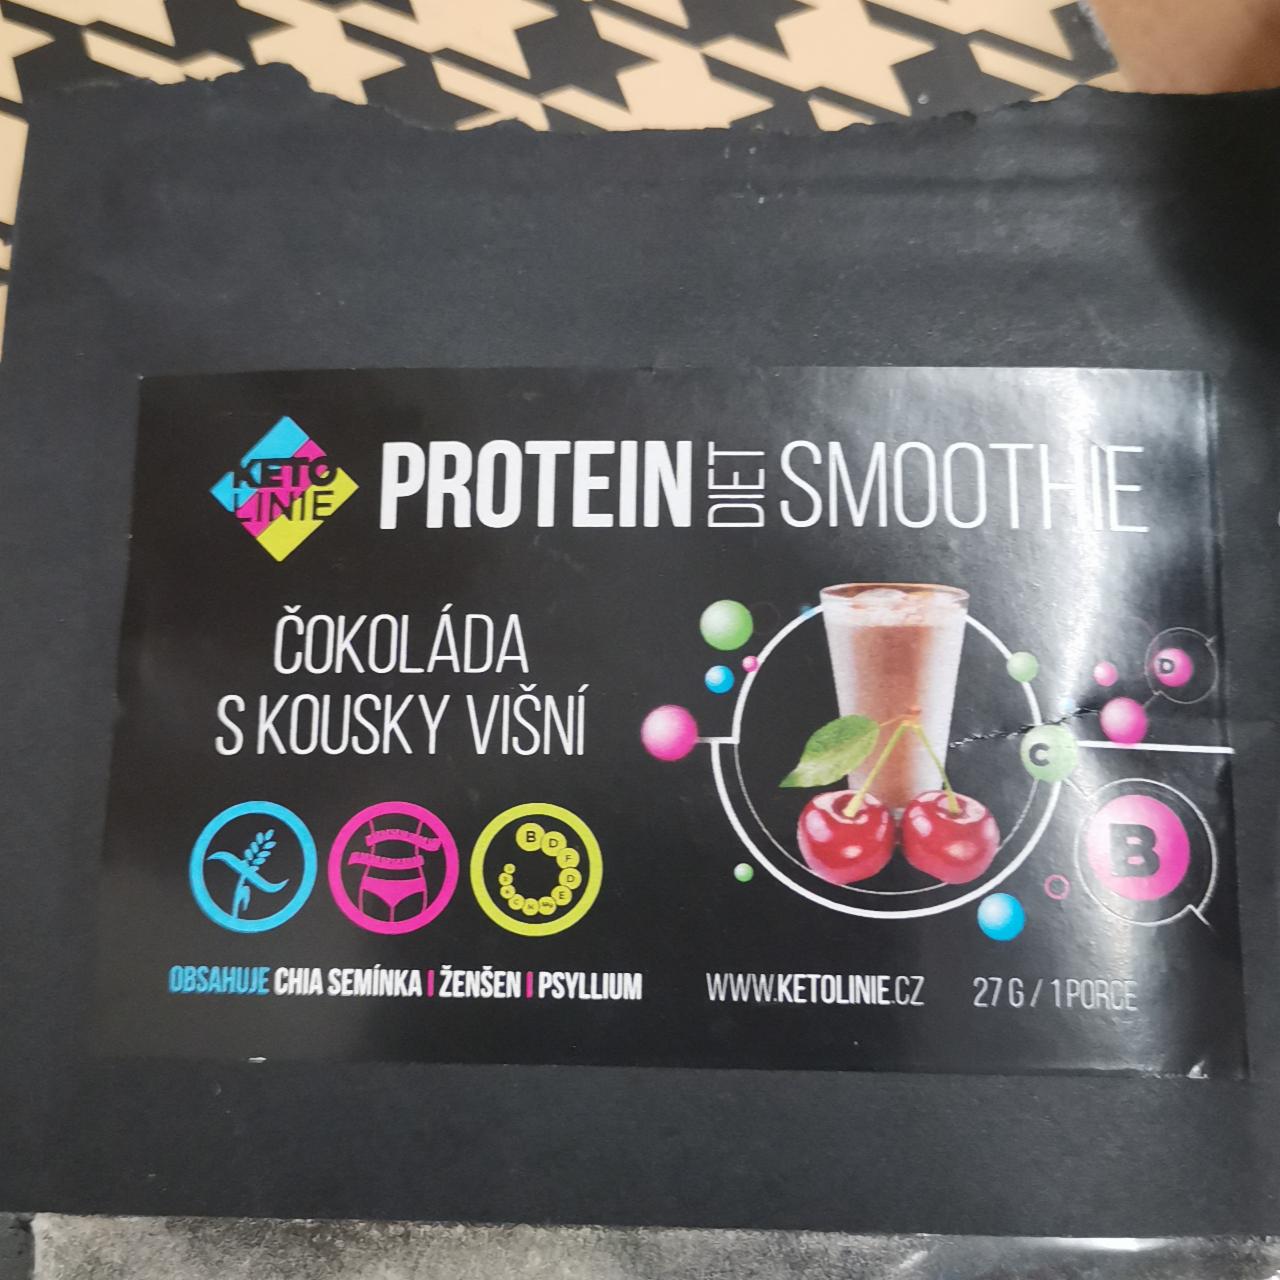 Fotografie - DietSmoothie dietní proteinové smoothie čokoláda s kousky višní KetoLinie